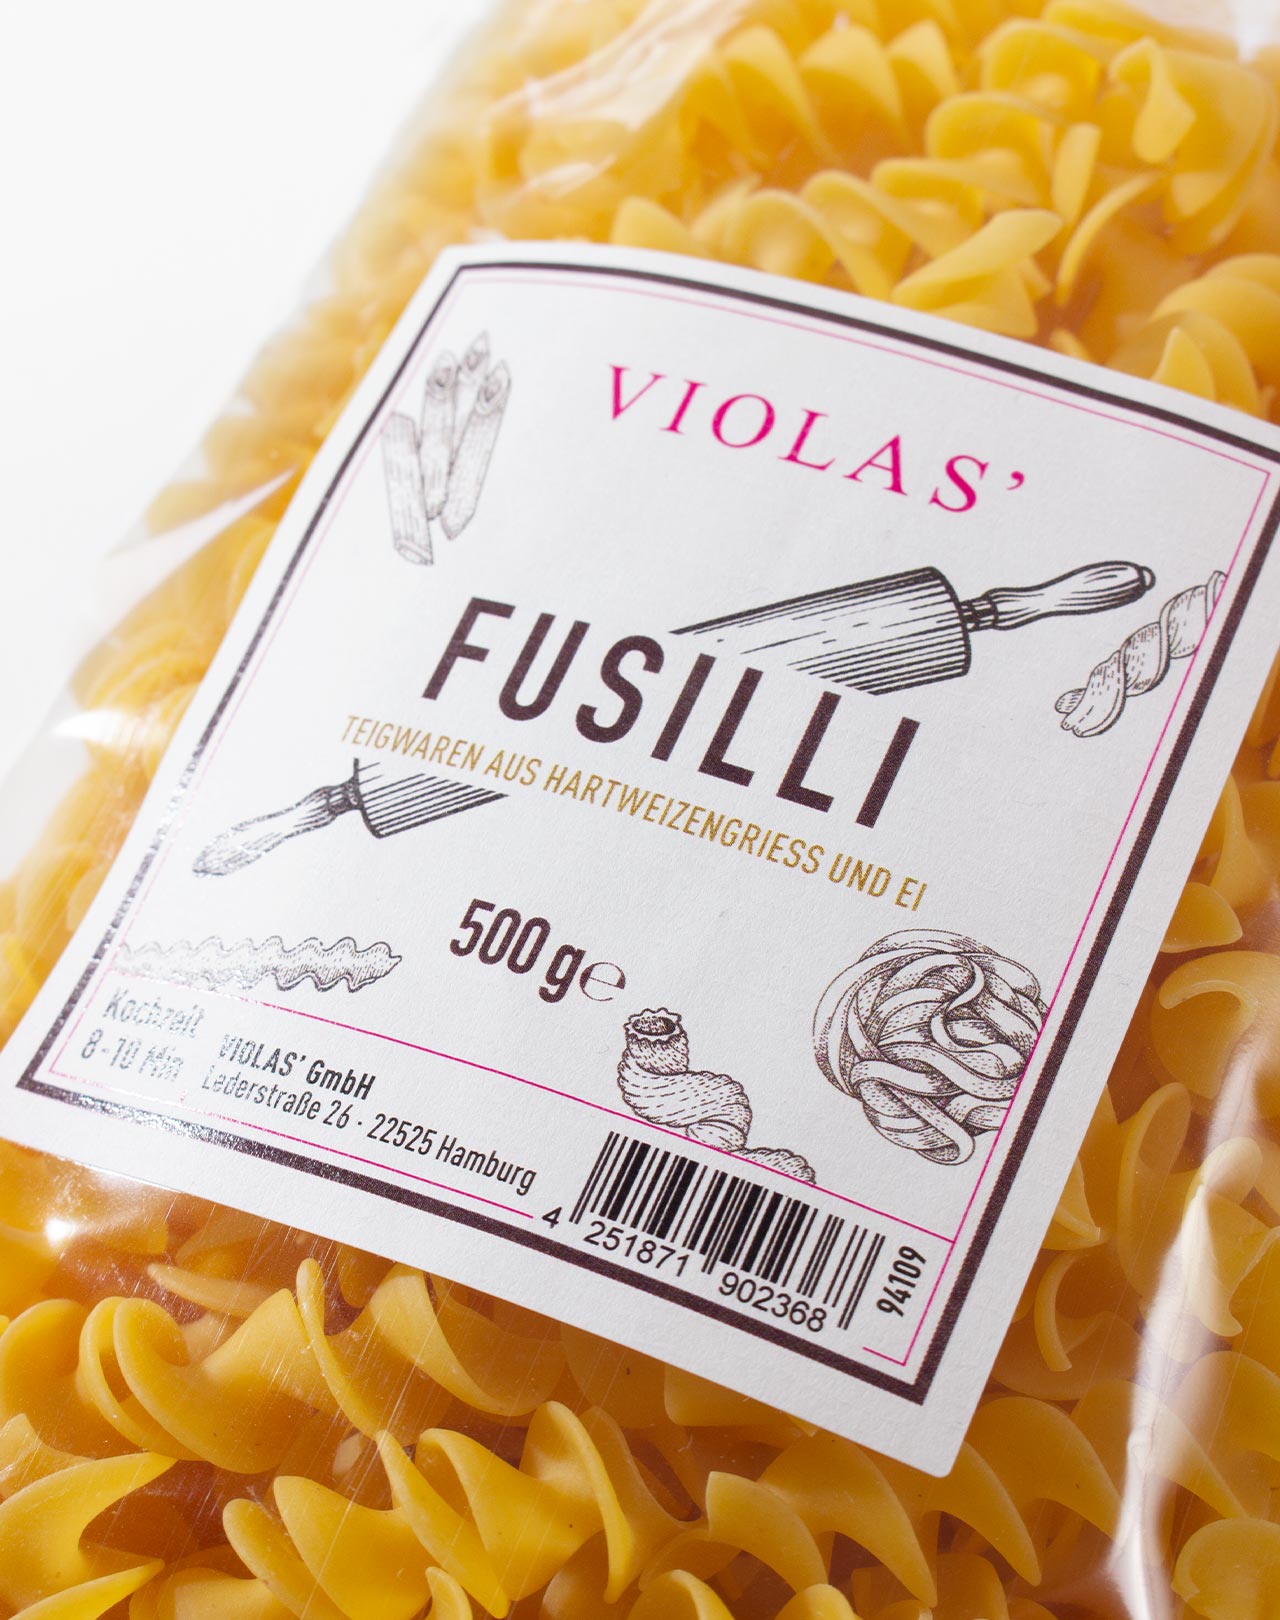 VIOLAS’ Pasta »Fusilli«